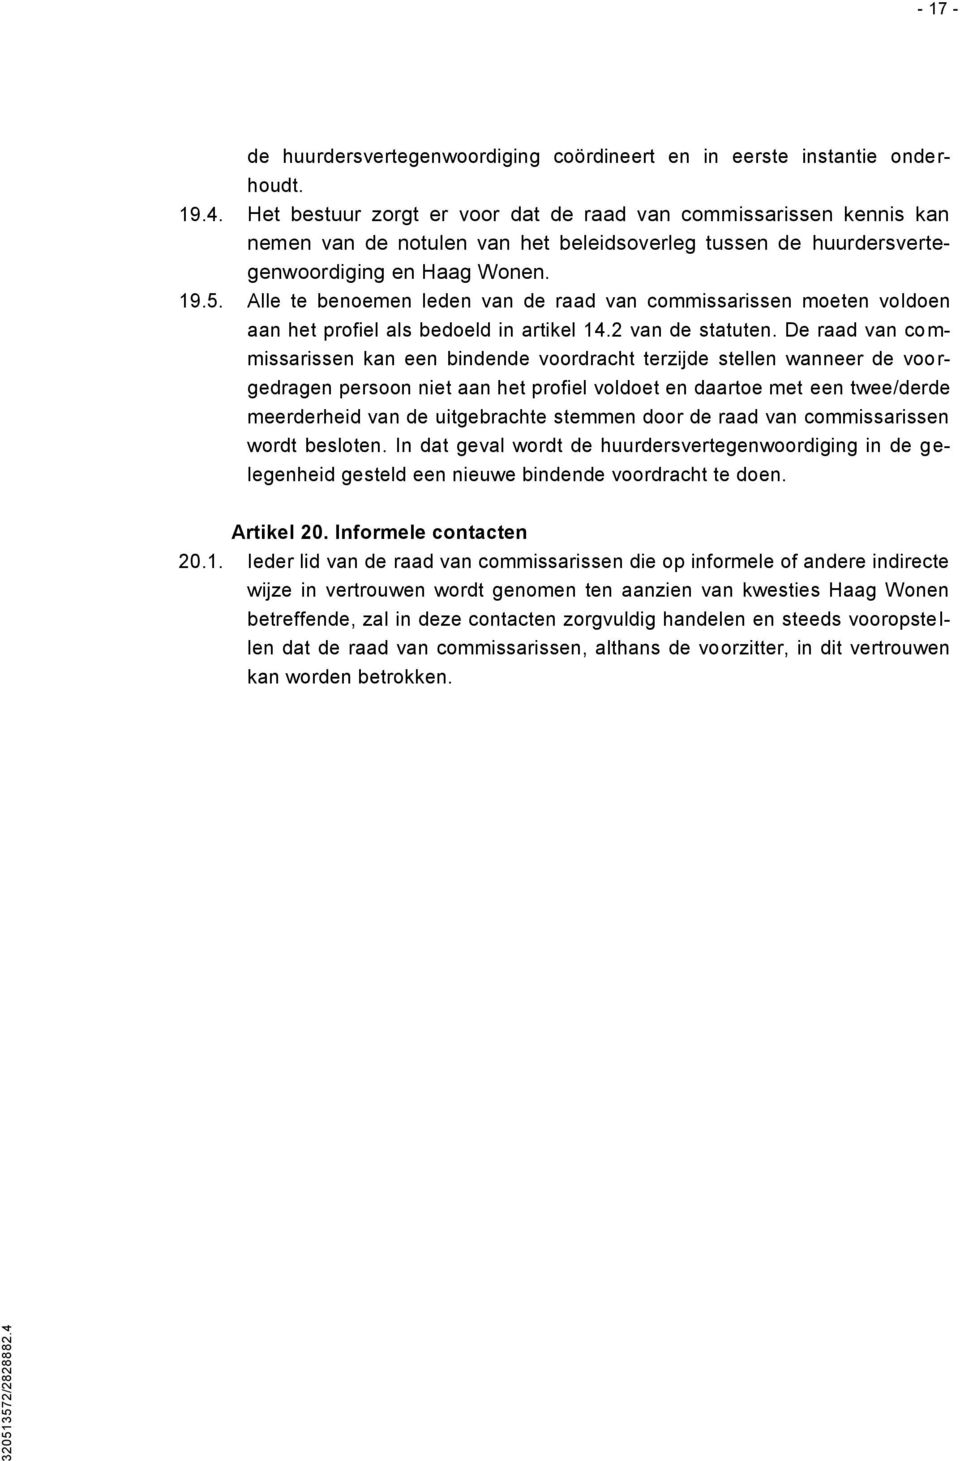 Alle te benoemen leden van de raad van commissarissen moeten voldoen aan het profiel als bedoeld in artikel 14.2 van de statuten.